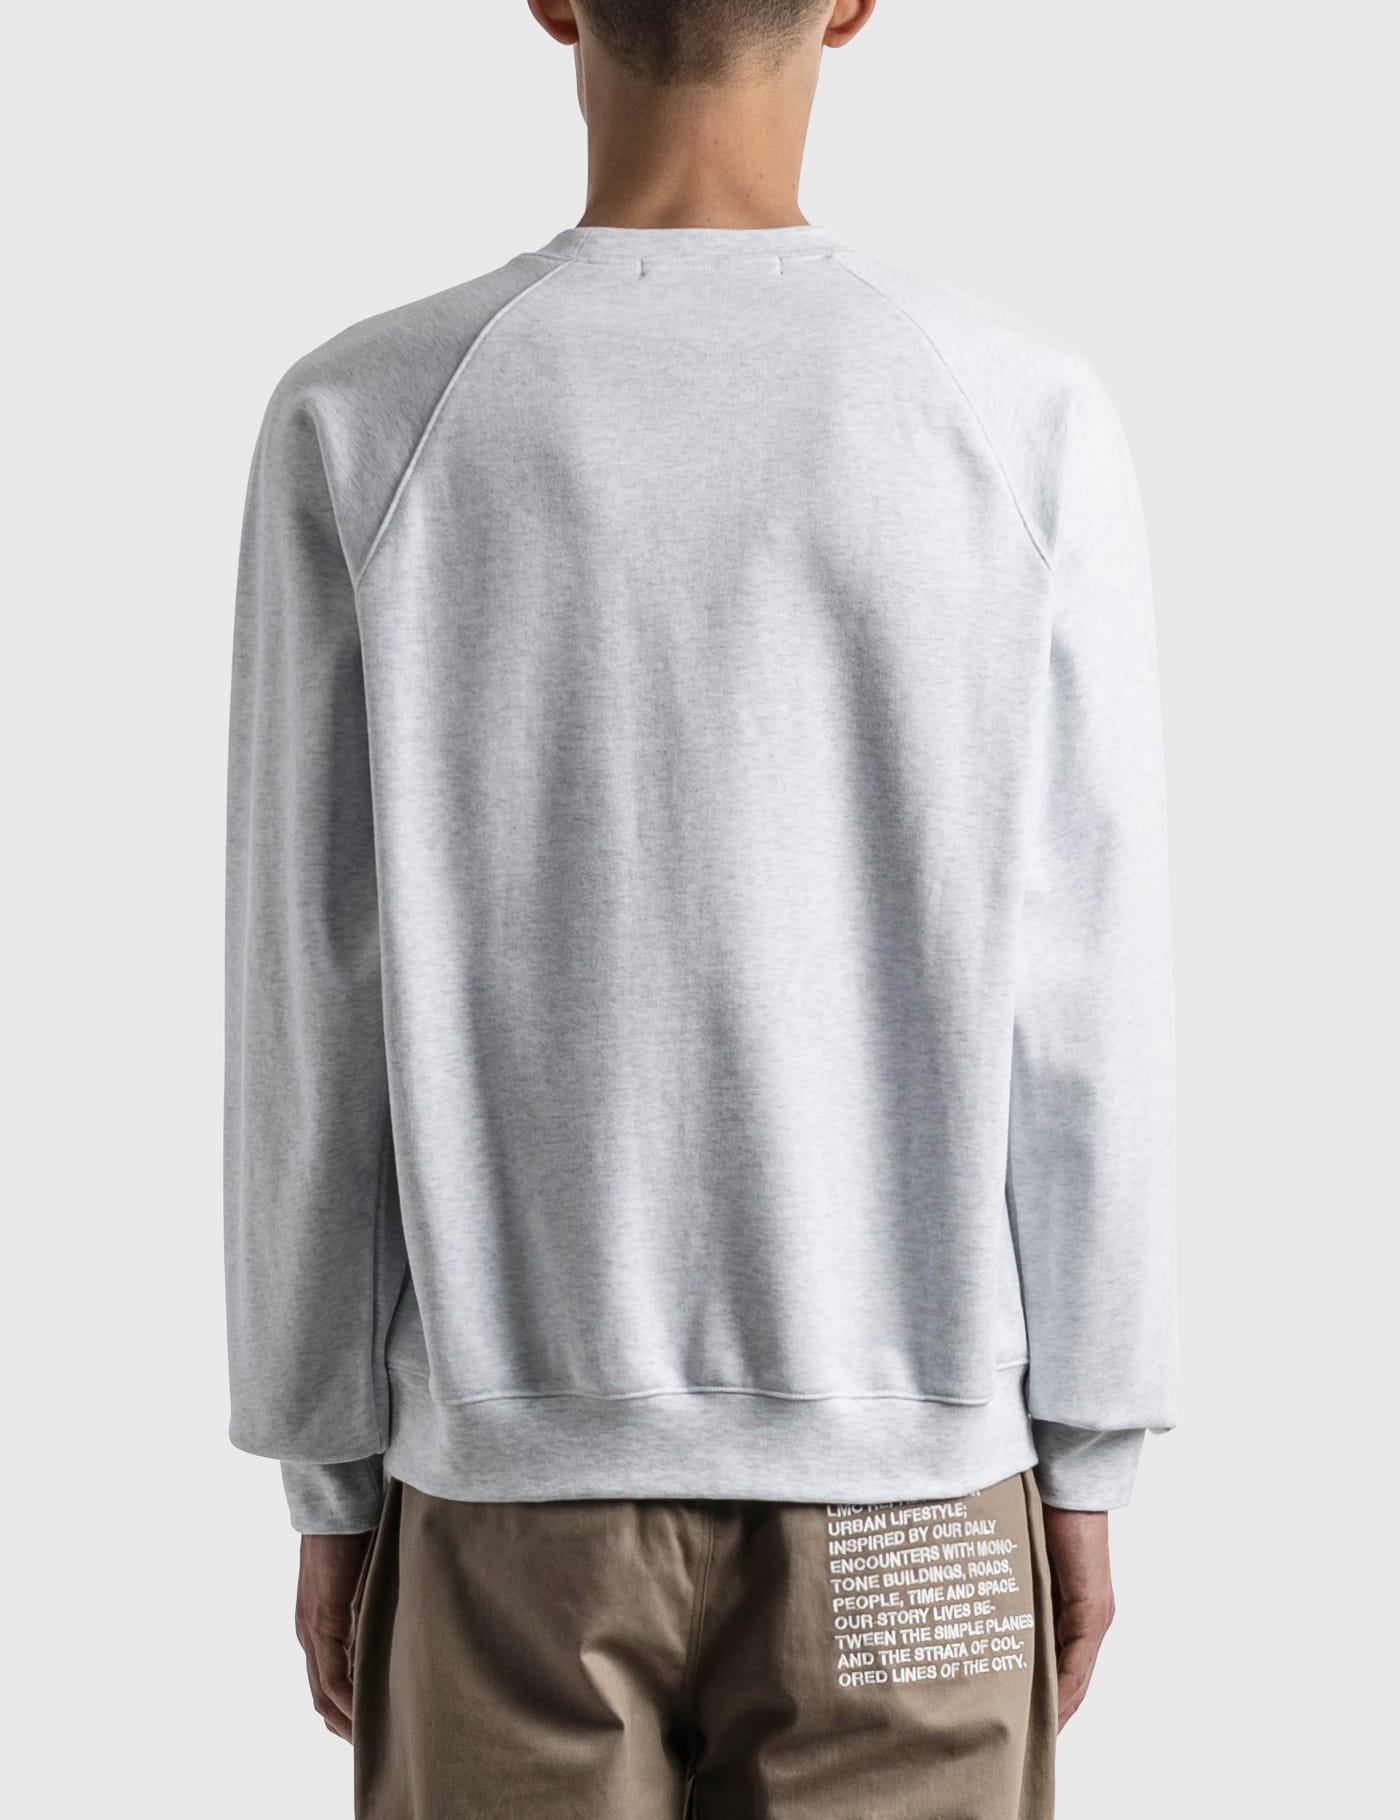 LMC - Club Athletic Raglan Sweatshirt | HBX - Globally Curated Fashion and  Lifestyle by Hypebeast